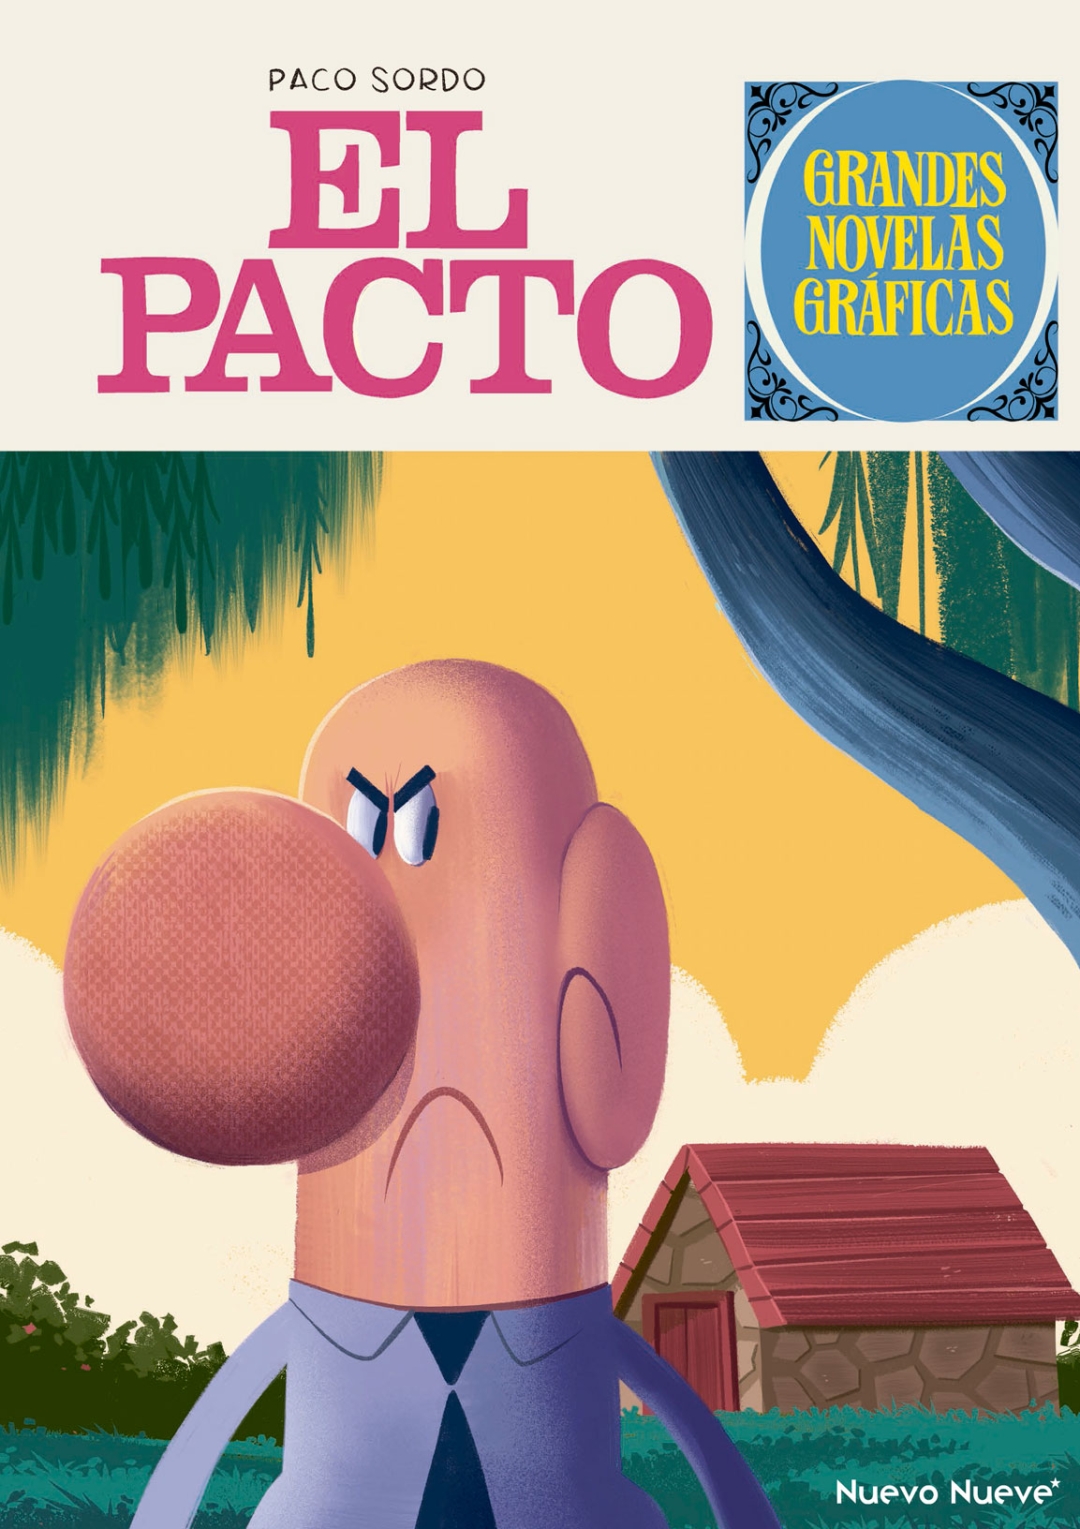 ‘El pacto’, by Paco Sordo